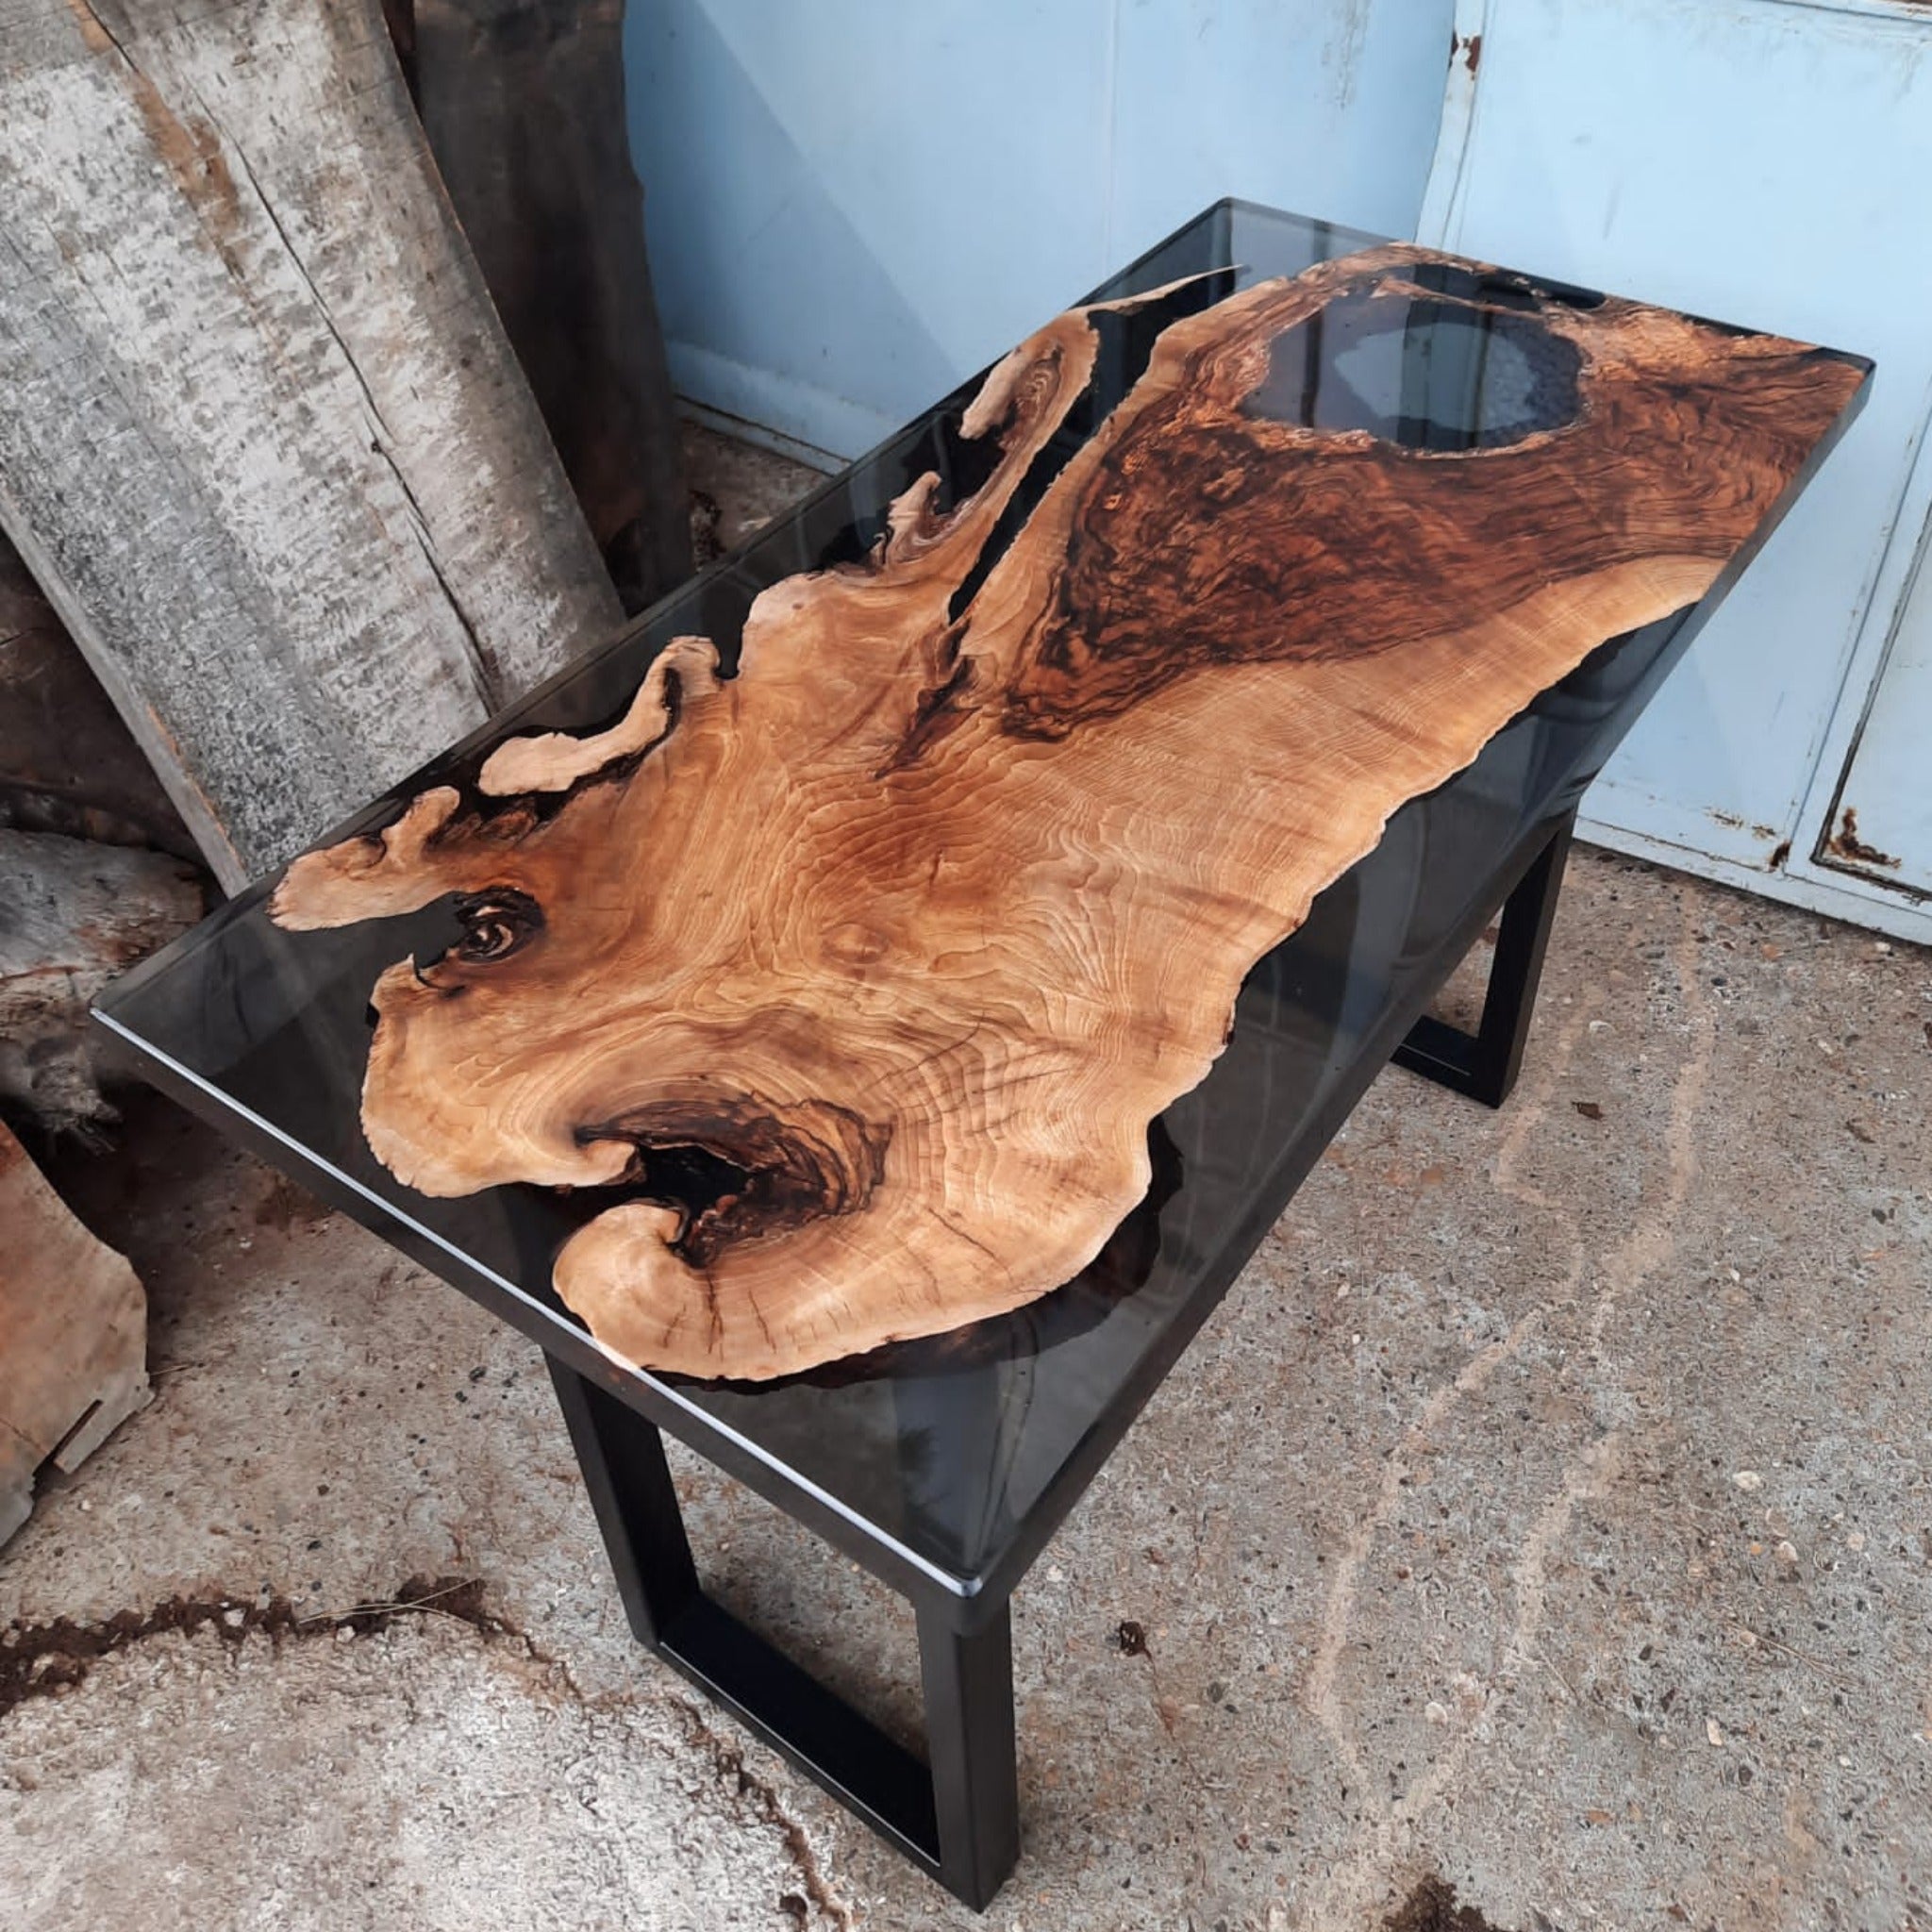 Wood Epoxy Resin Table